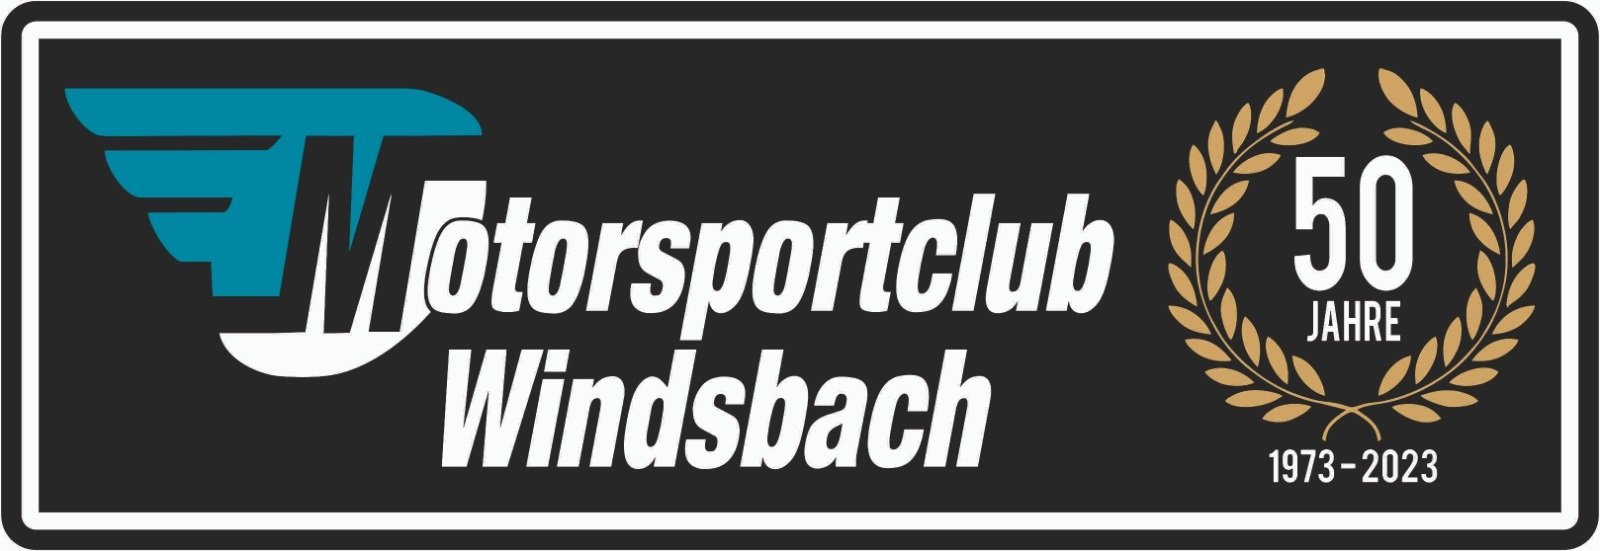 Bild zu Jahreshauptversammlung des Motorsportclub Windsbach e. V. im KS